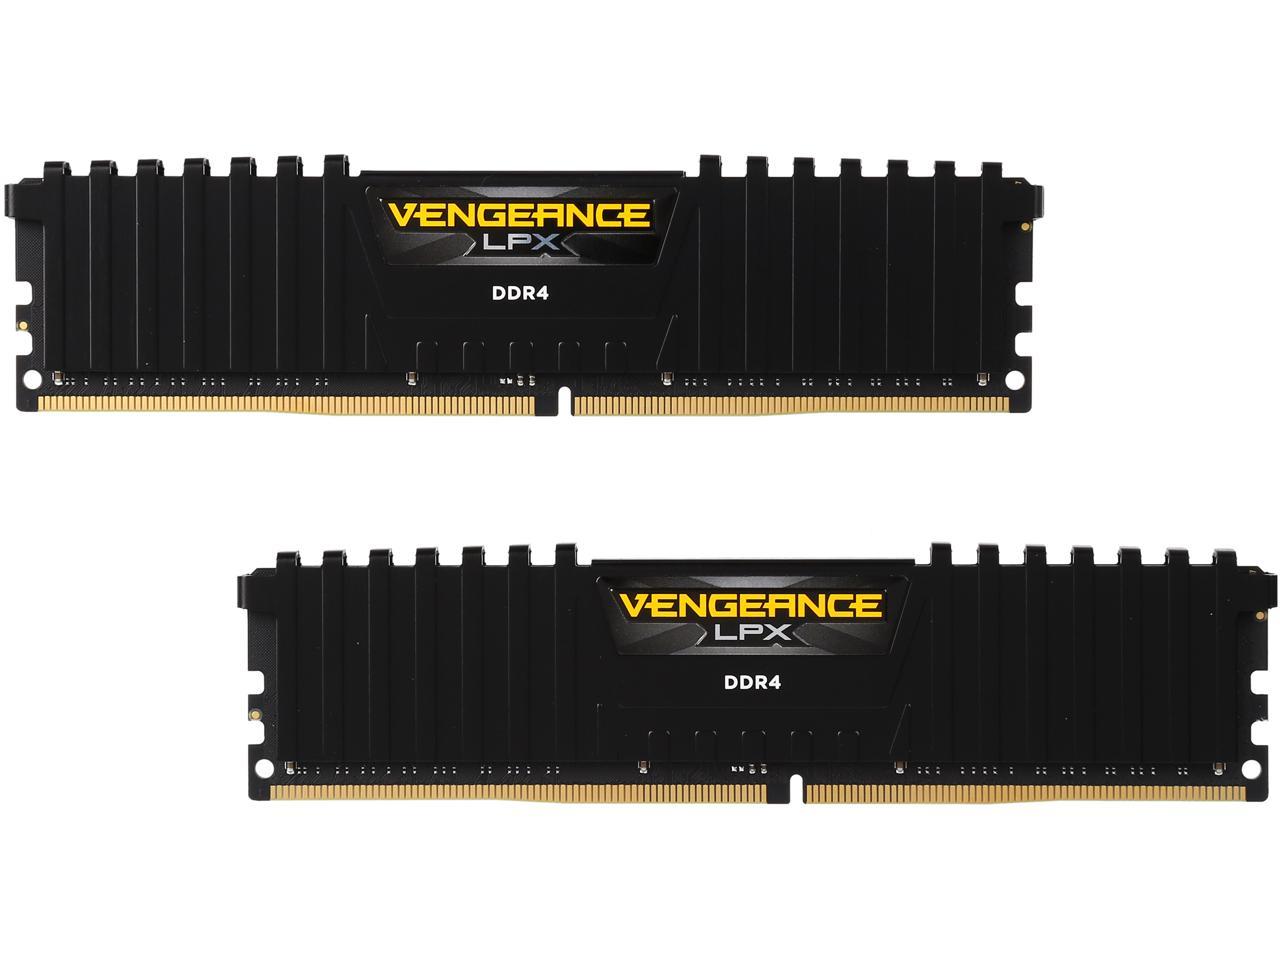 für AMD Ryzen und Intel 200 Corsair Vengeance LPX 16GB schwarz 2x8GB DDR4 2400MHz C16 XMP 2.0 High Performance Desktop Arbeitsspeicher Kit 